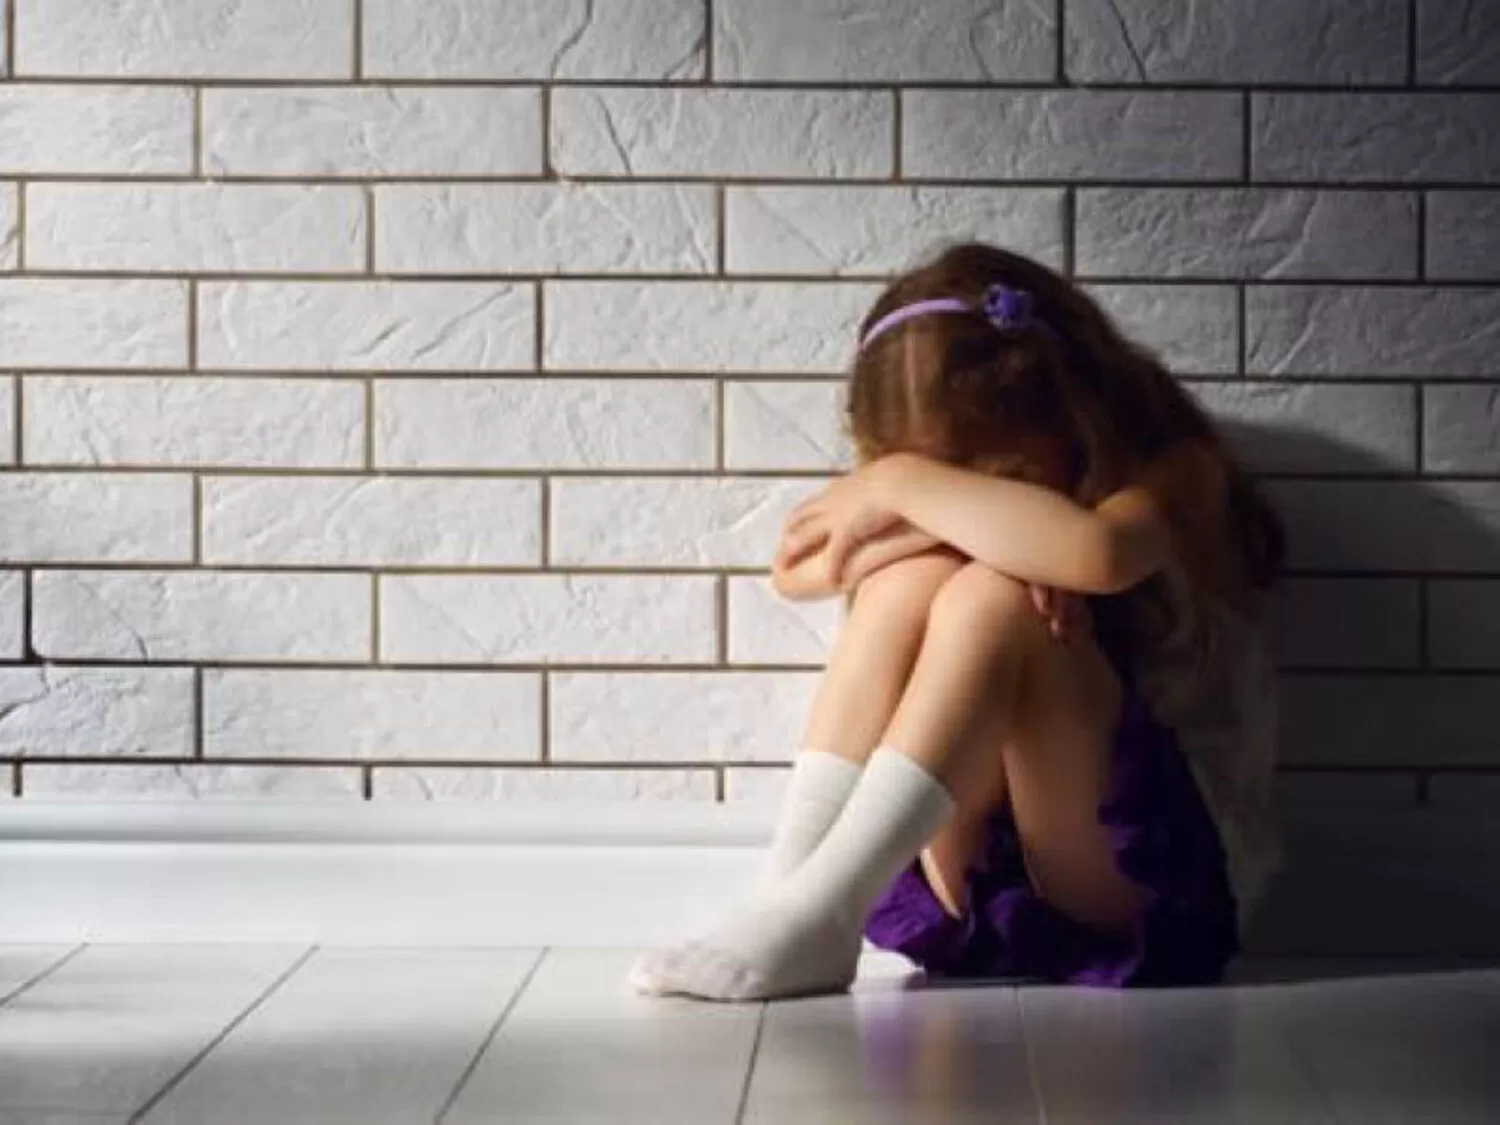 Bergamo abusi sessuali bambina processo